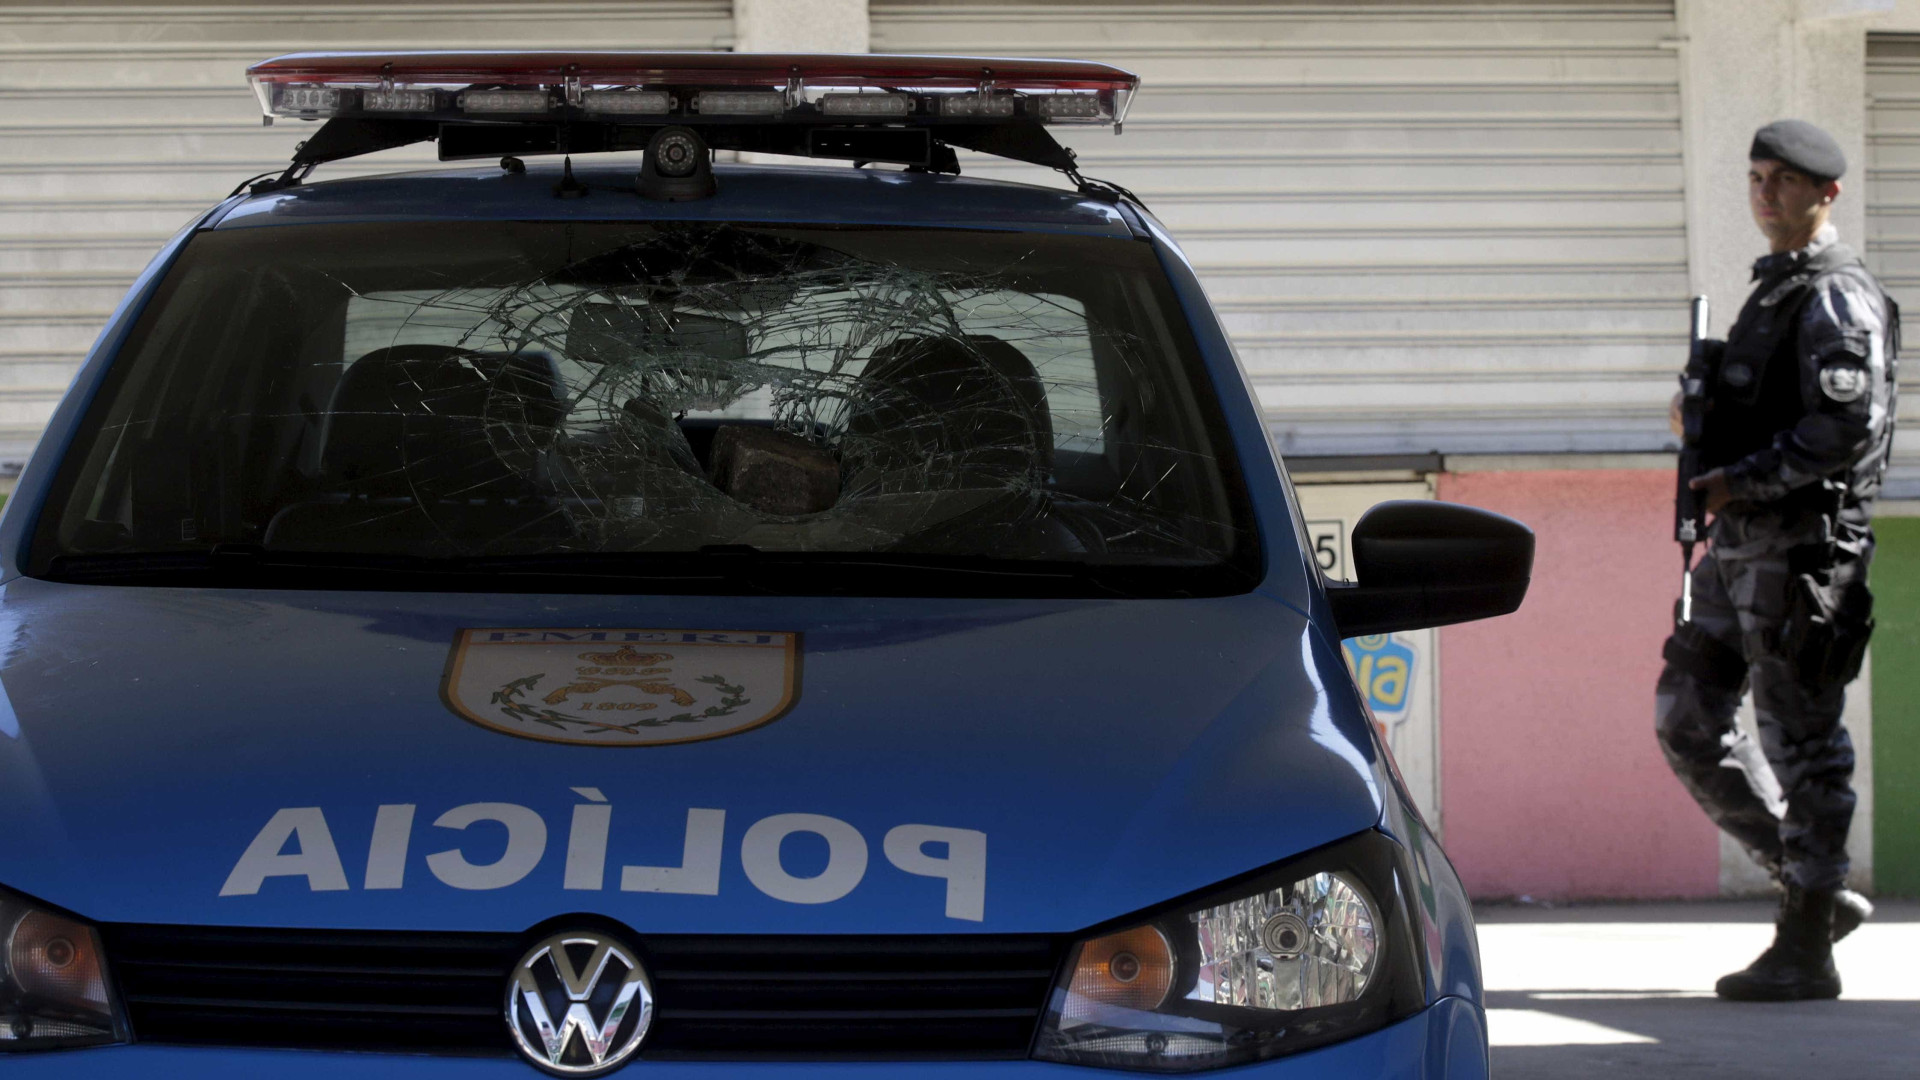 Troca de tiros entre suspeitos e PMs deixa uma pessoa ferida no Rio